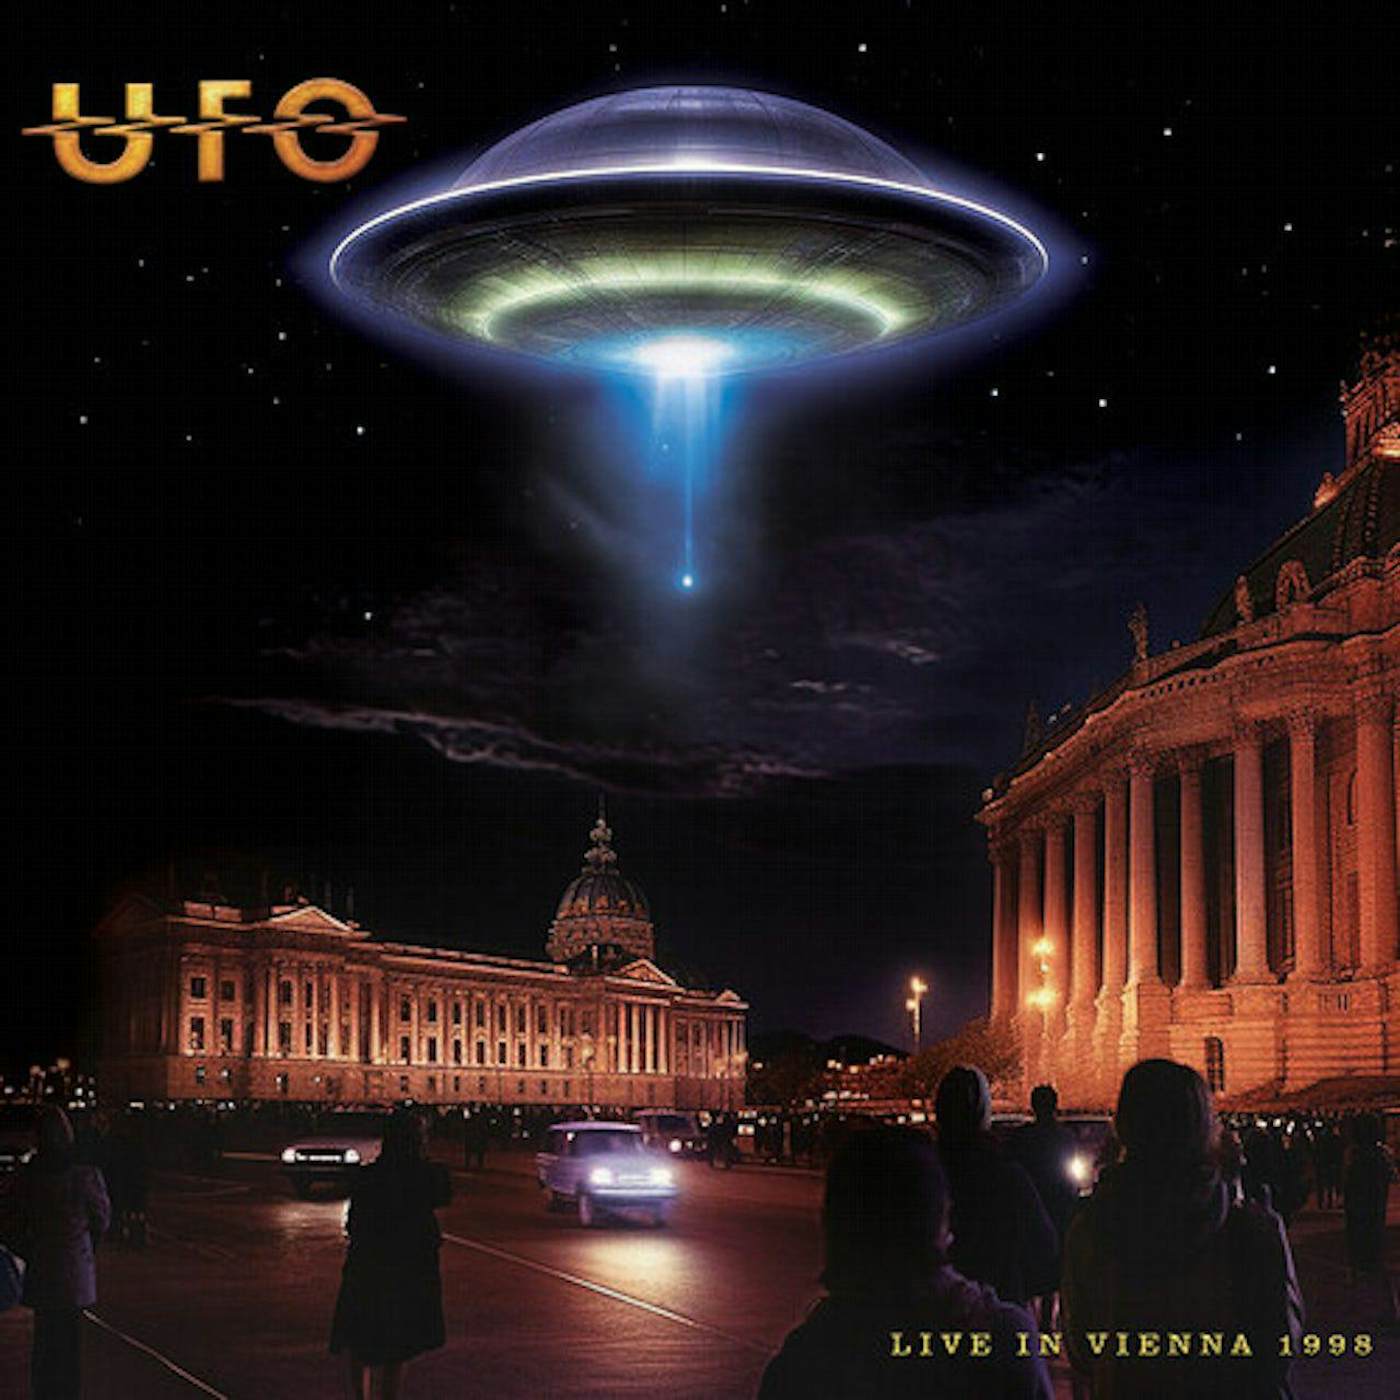 UFO Live In Vienna 1998 - Silver Vinyl Record